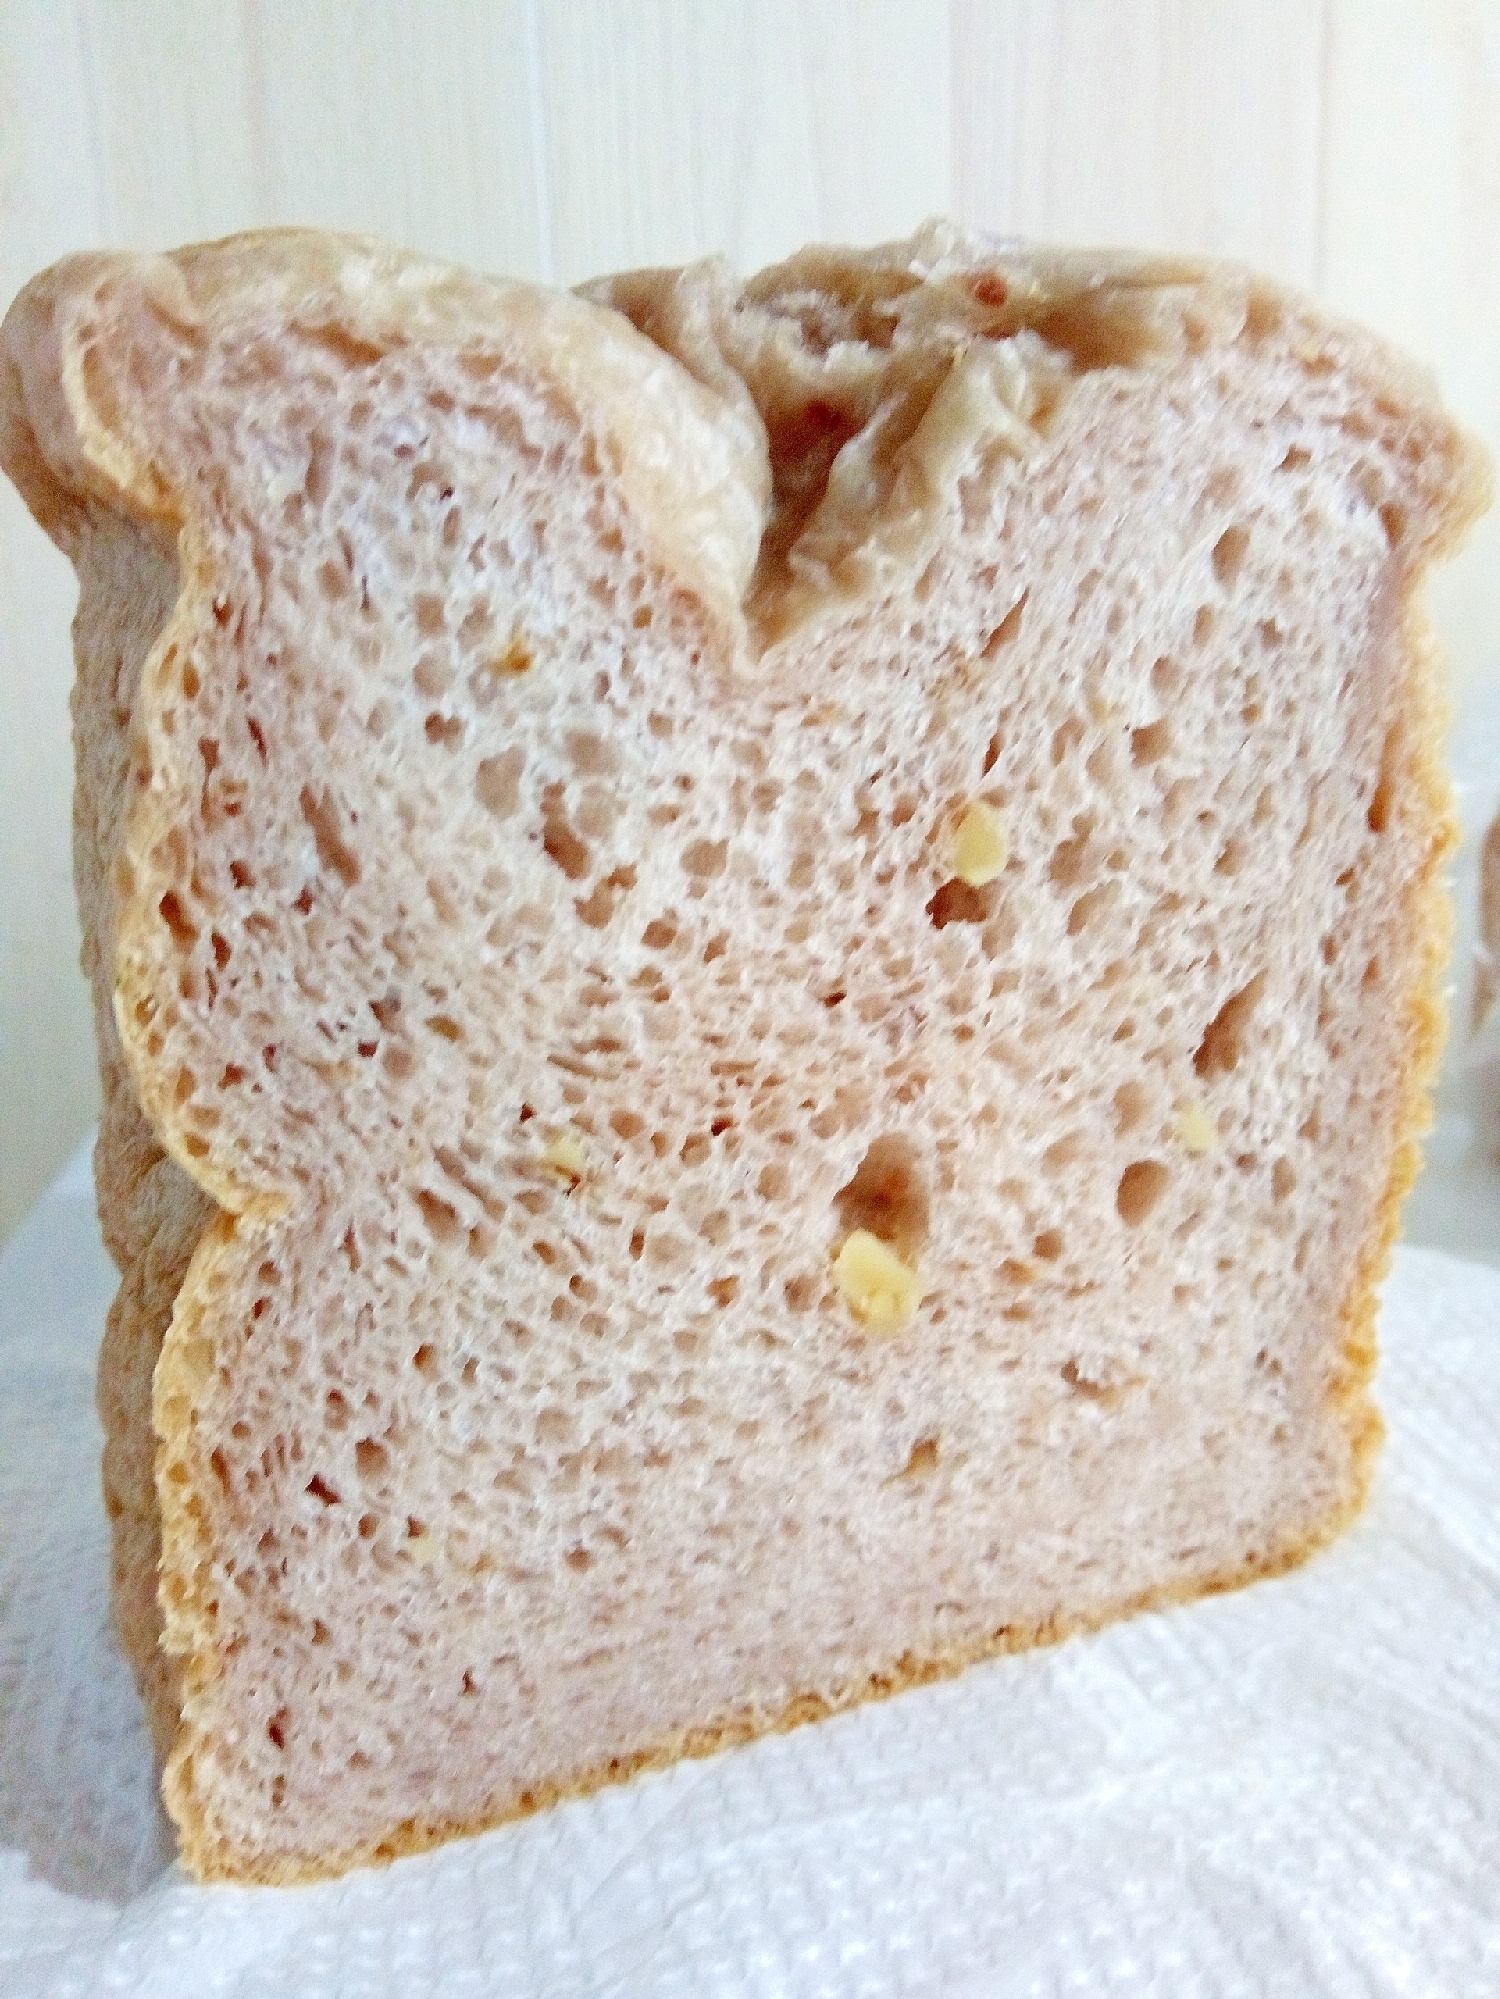 HBでクルミの食パン